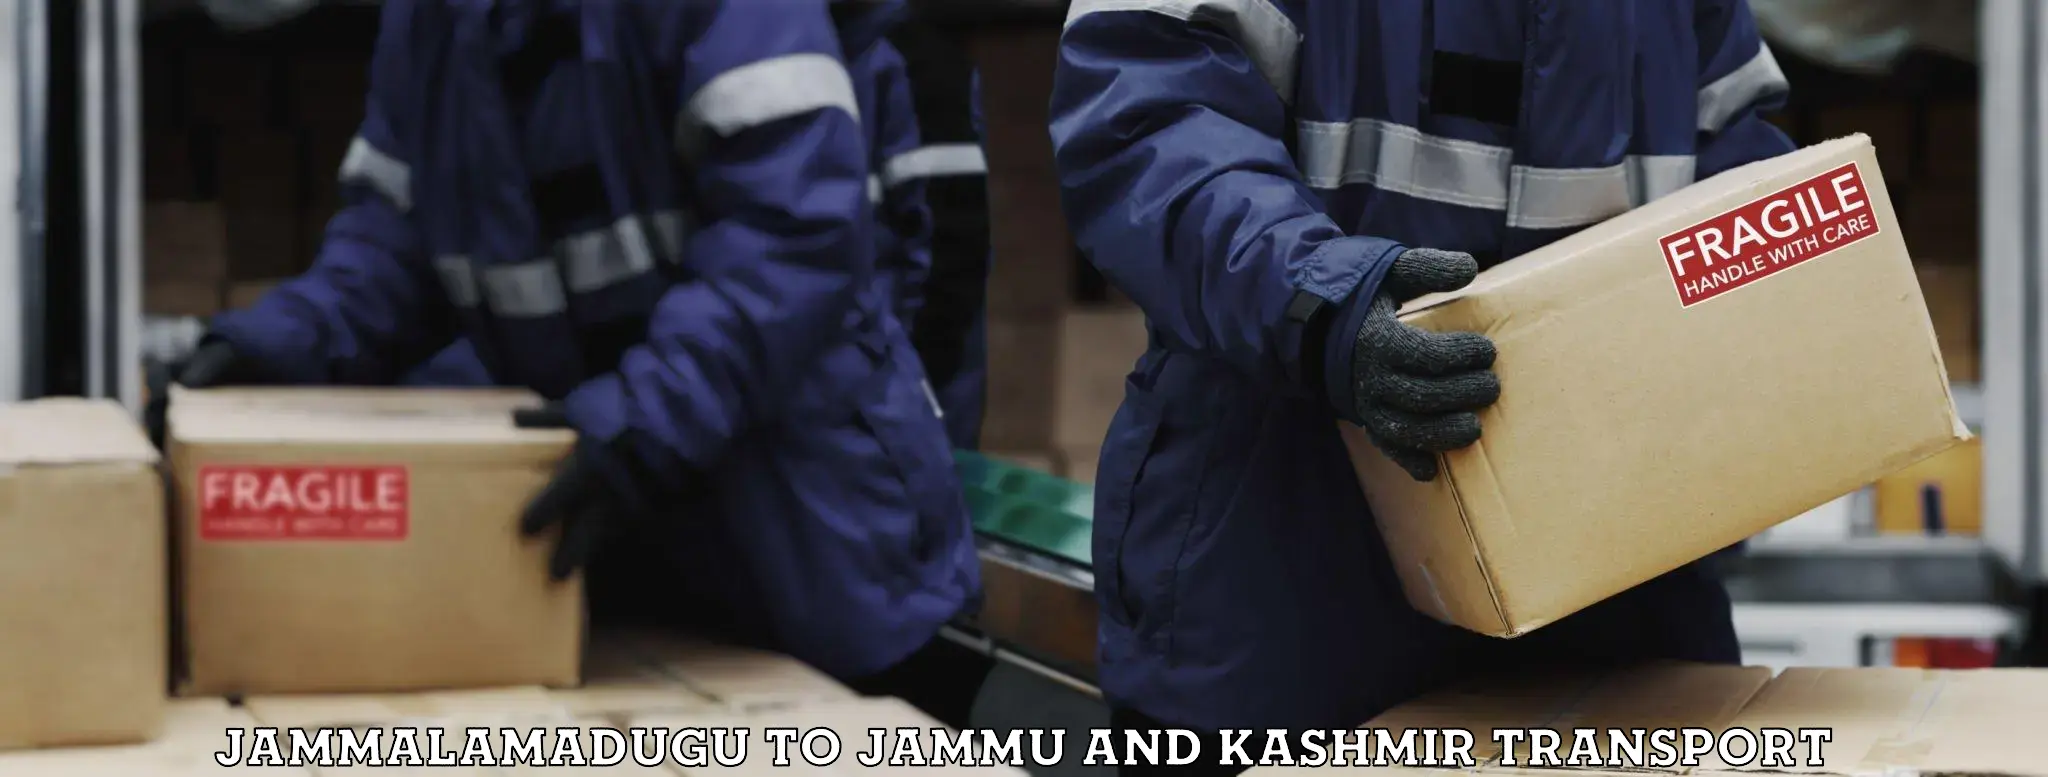 Cargo transportation services Jammalamadugu to Jammu and Kashmir